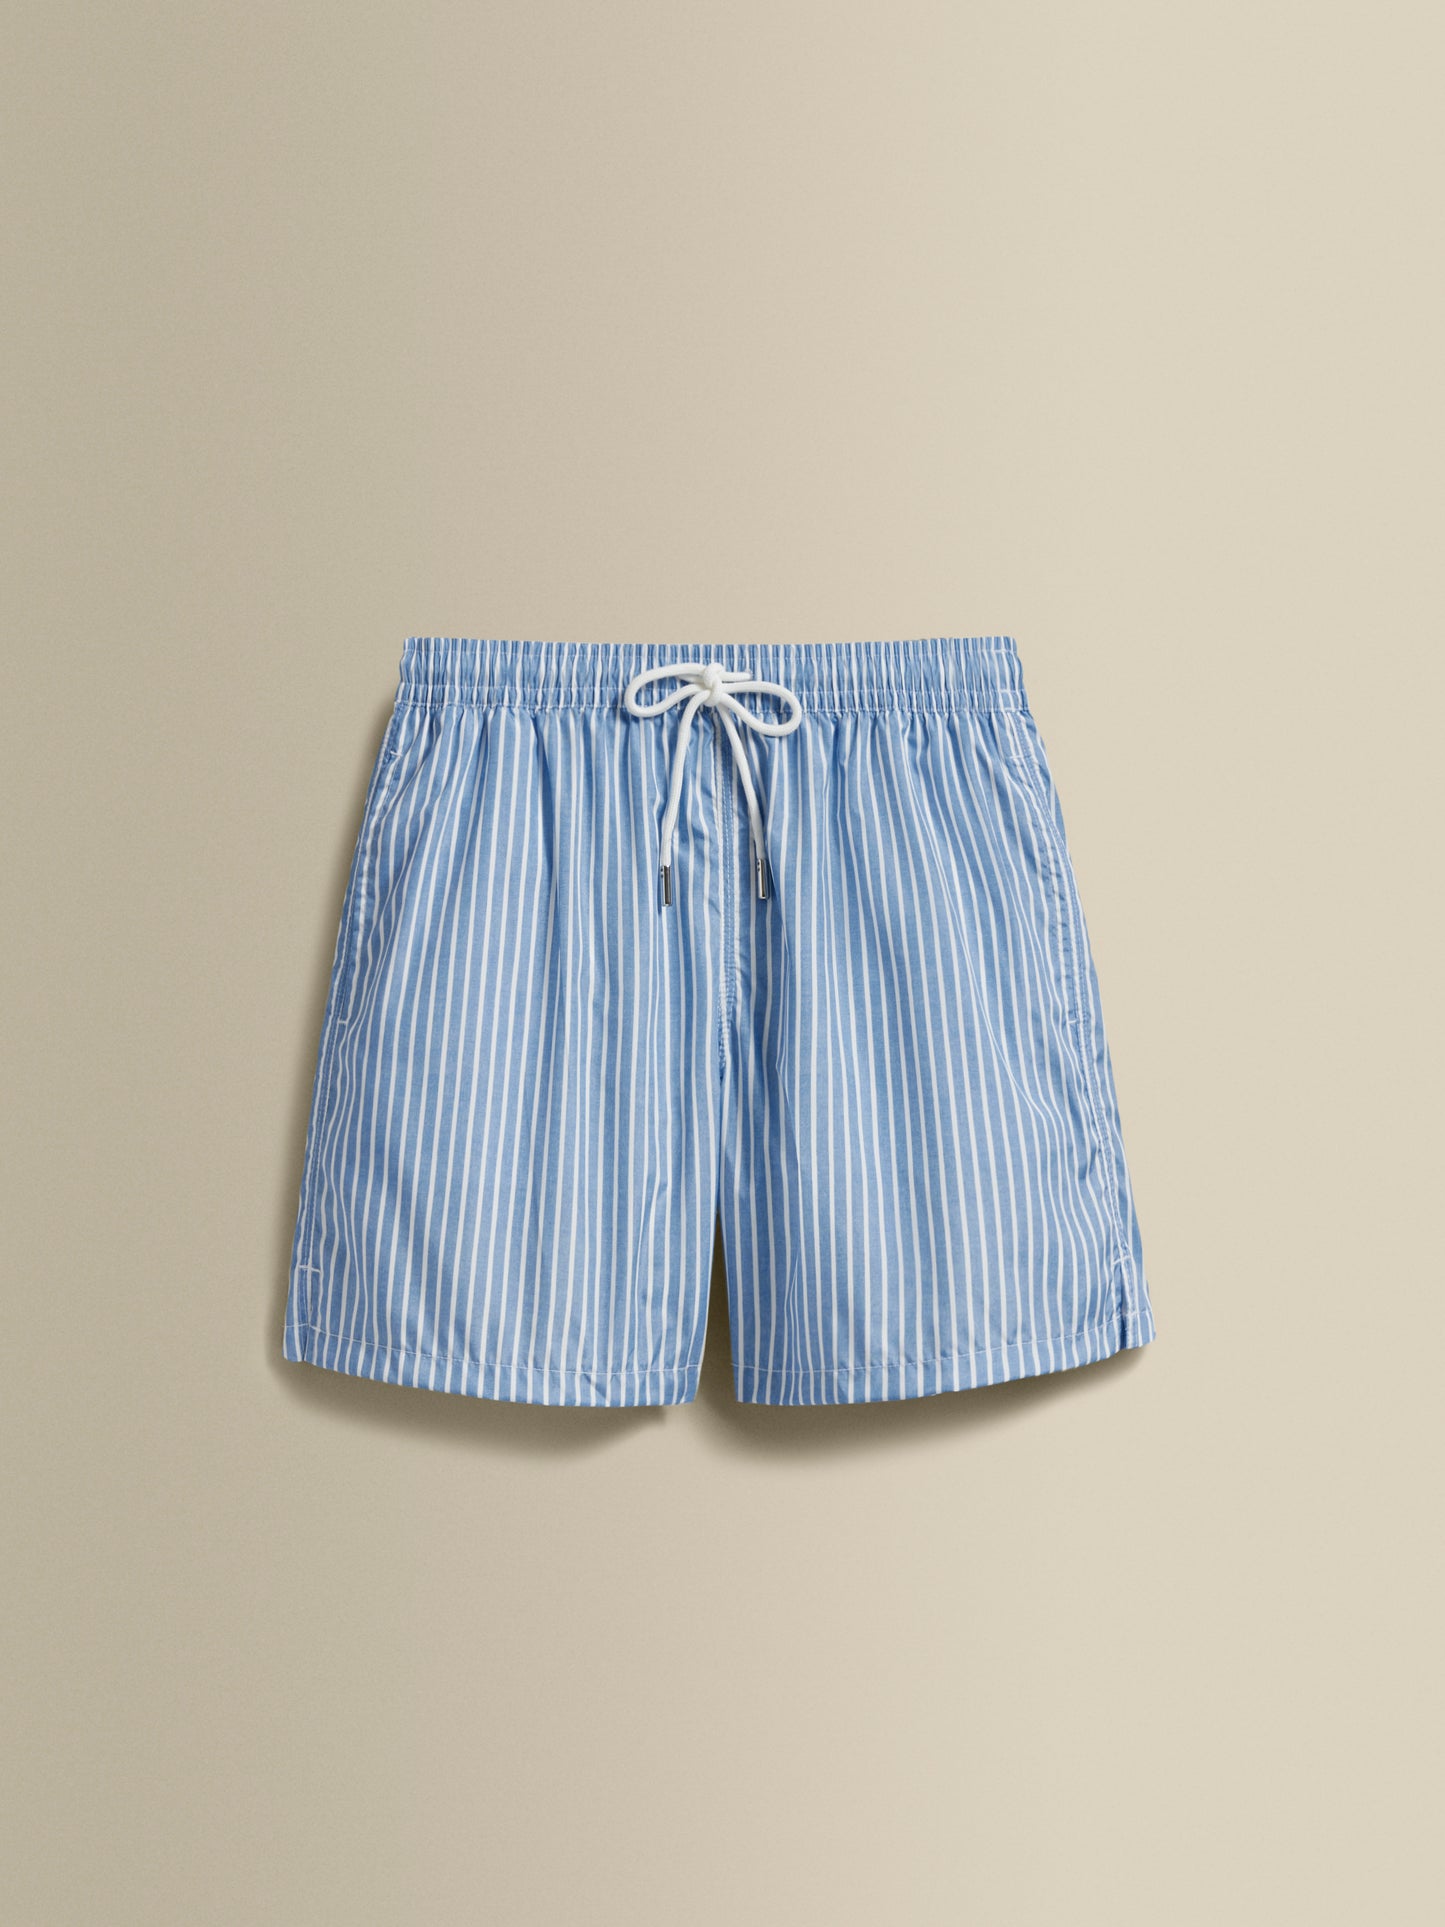 Nylon Mid Length Swim Shorts Blue Stripe Product Image